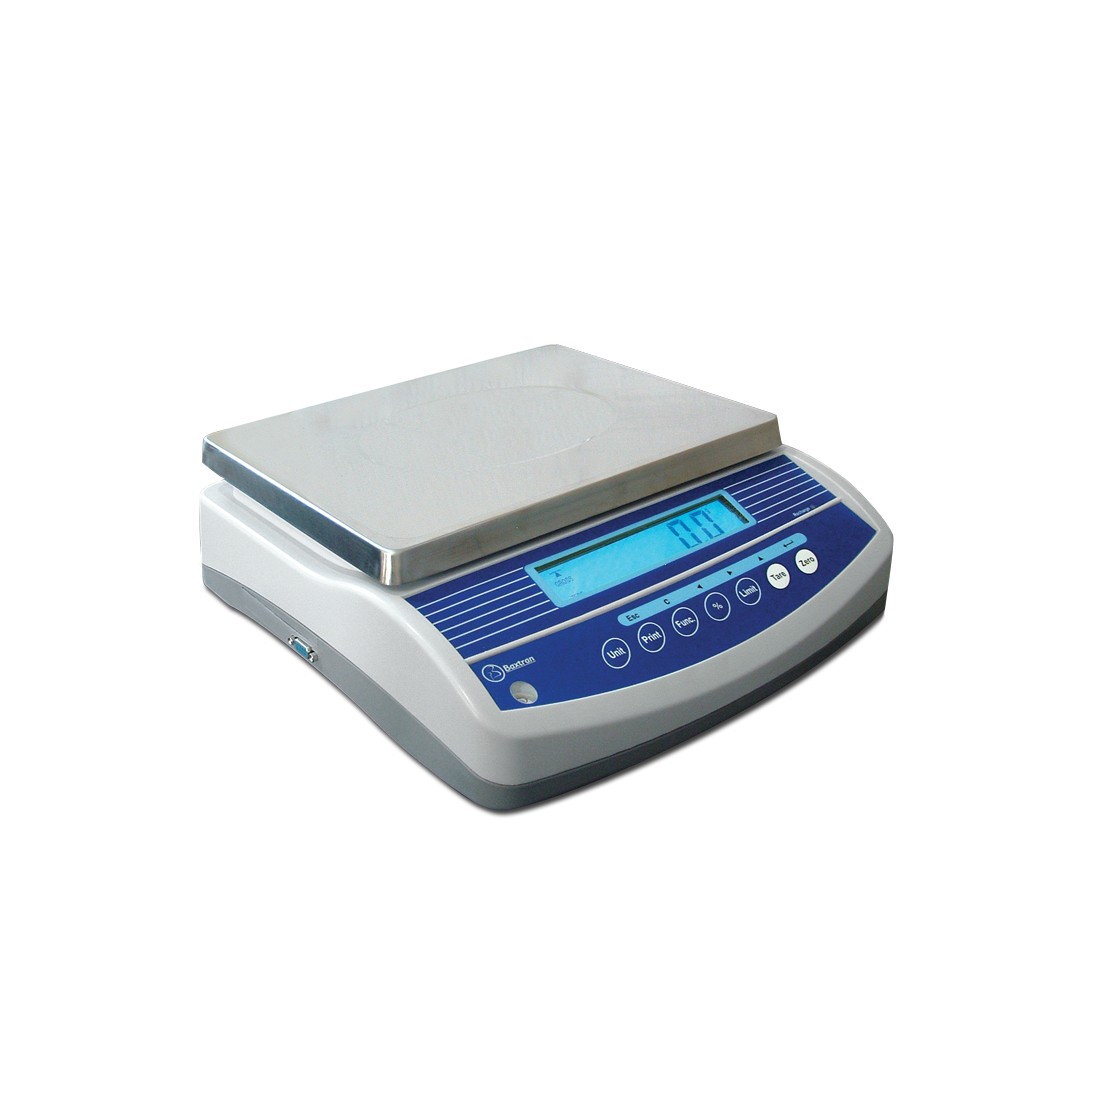 Balanza digital para peso corporal Gama - lluzlopez997 - ID 854970